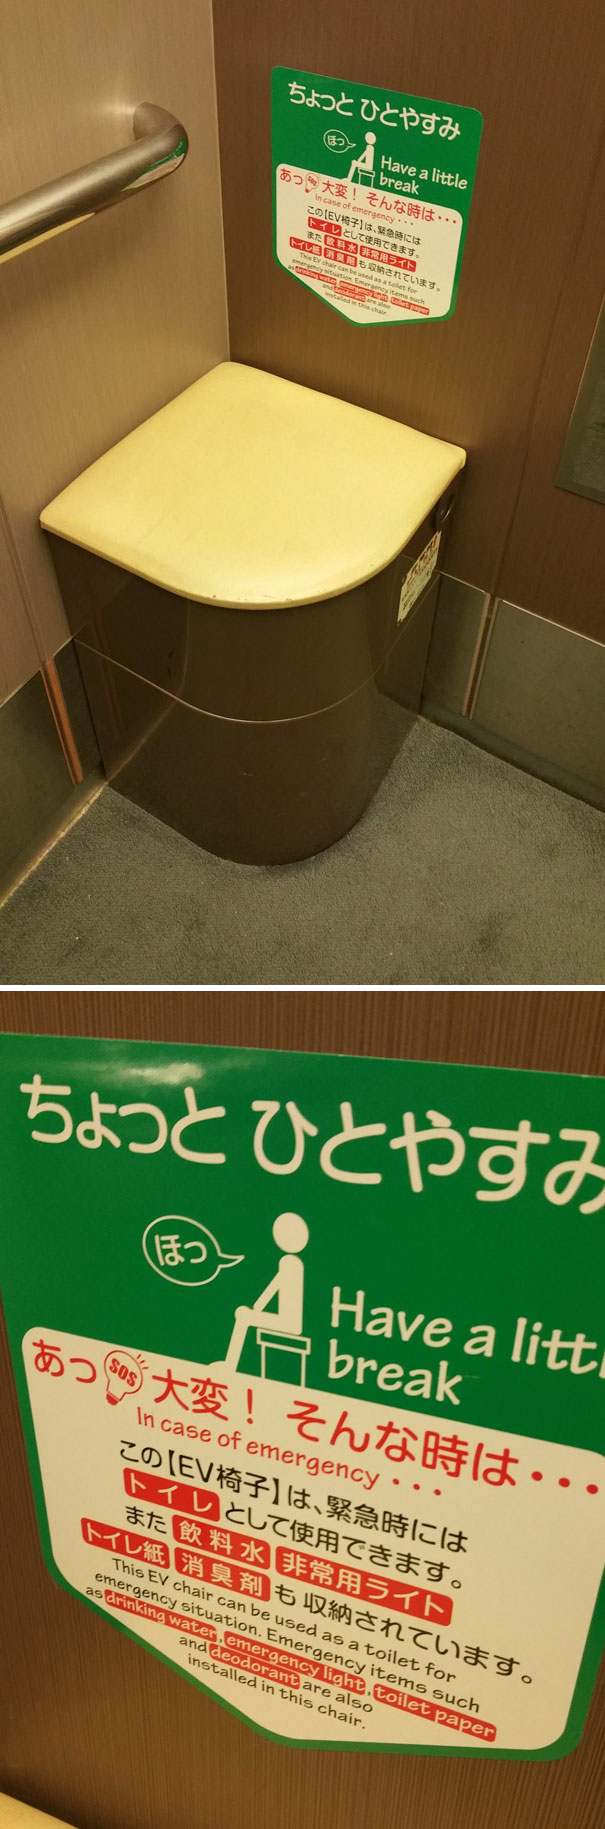 
Trong một vài trường hợp "cấp thiết", chiếc ghế phụ này có thể biến thành... bô đi vệ sinh. Bạn có tin không? Cứ thử đến Nhật đi rồi biết.